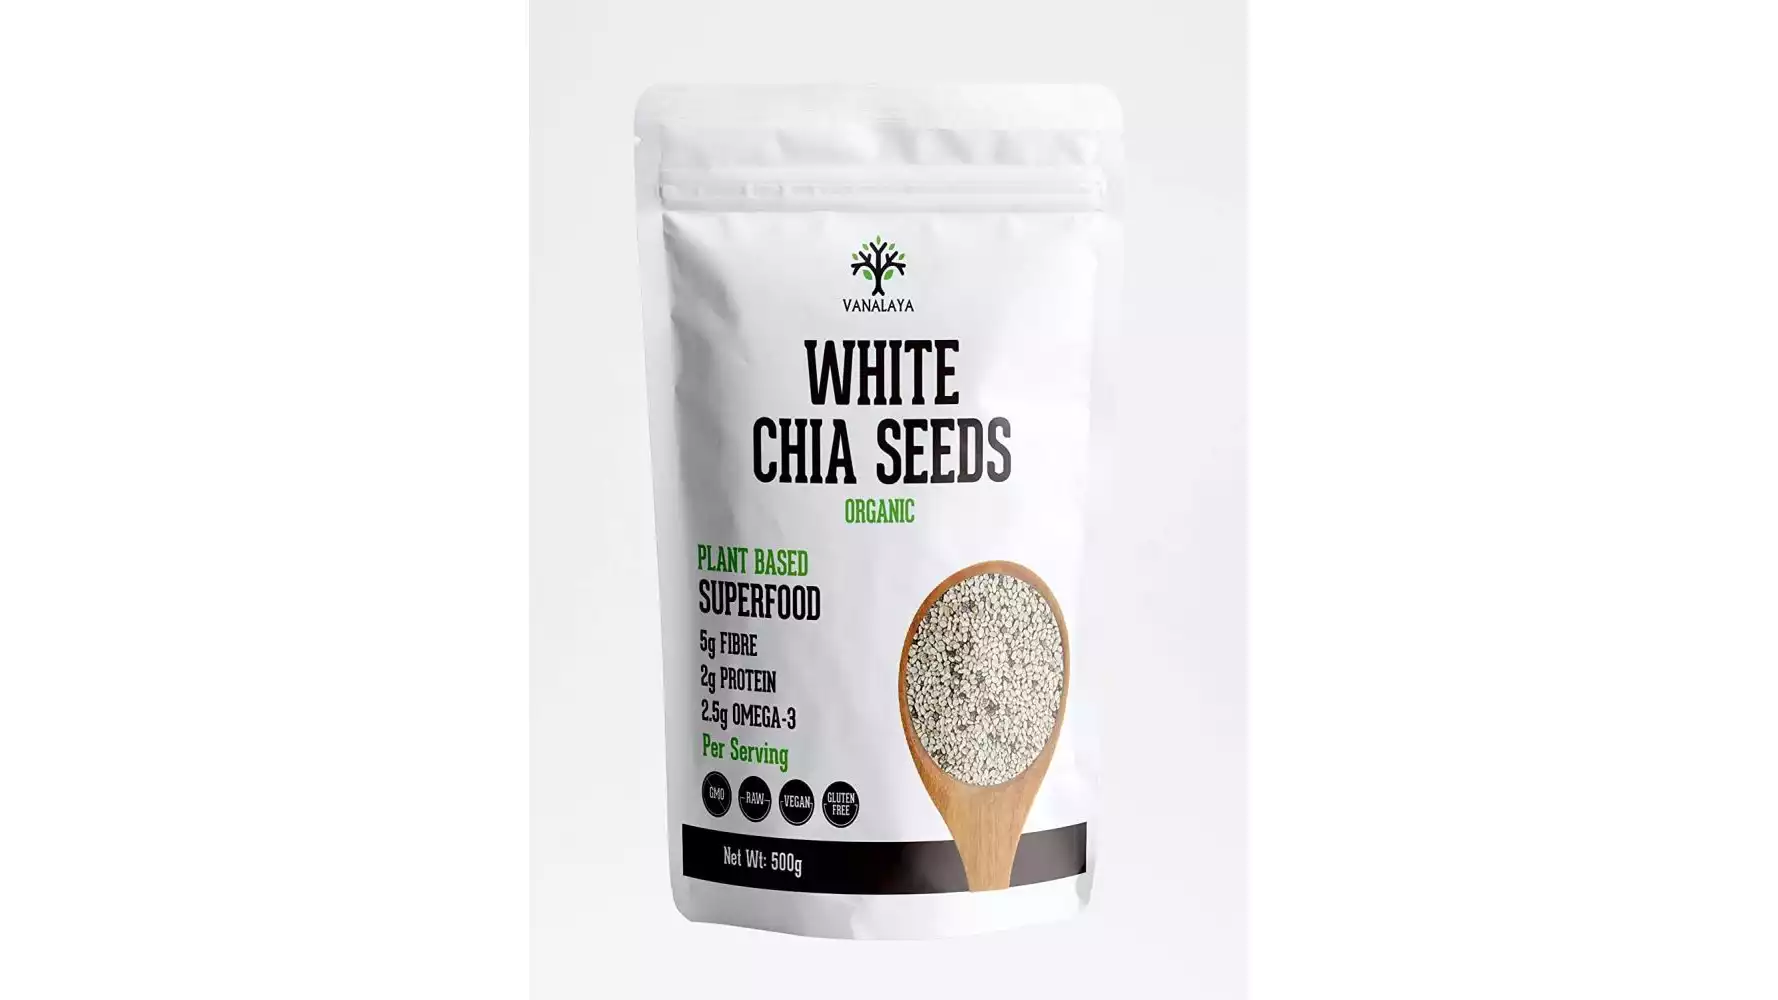 Vanalaya Organic White Chia Seeds (500g)